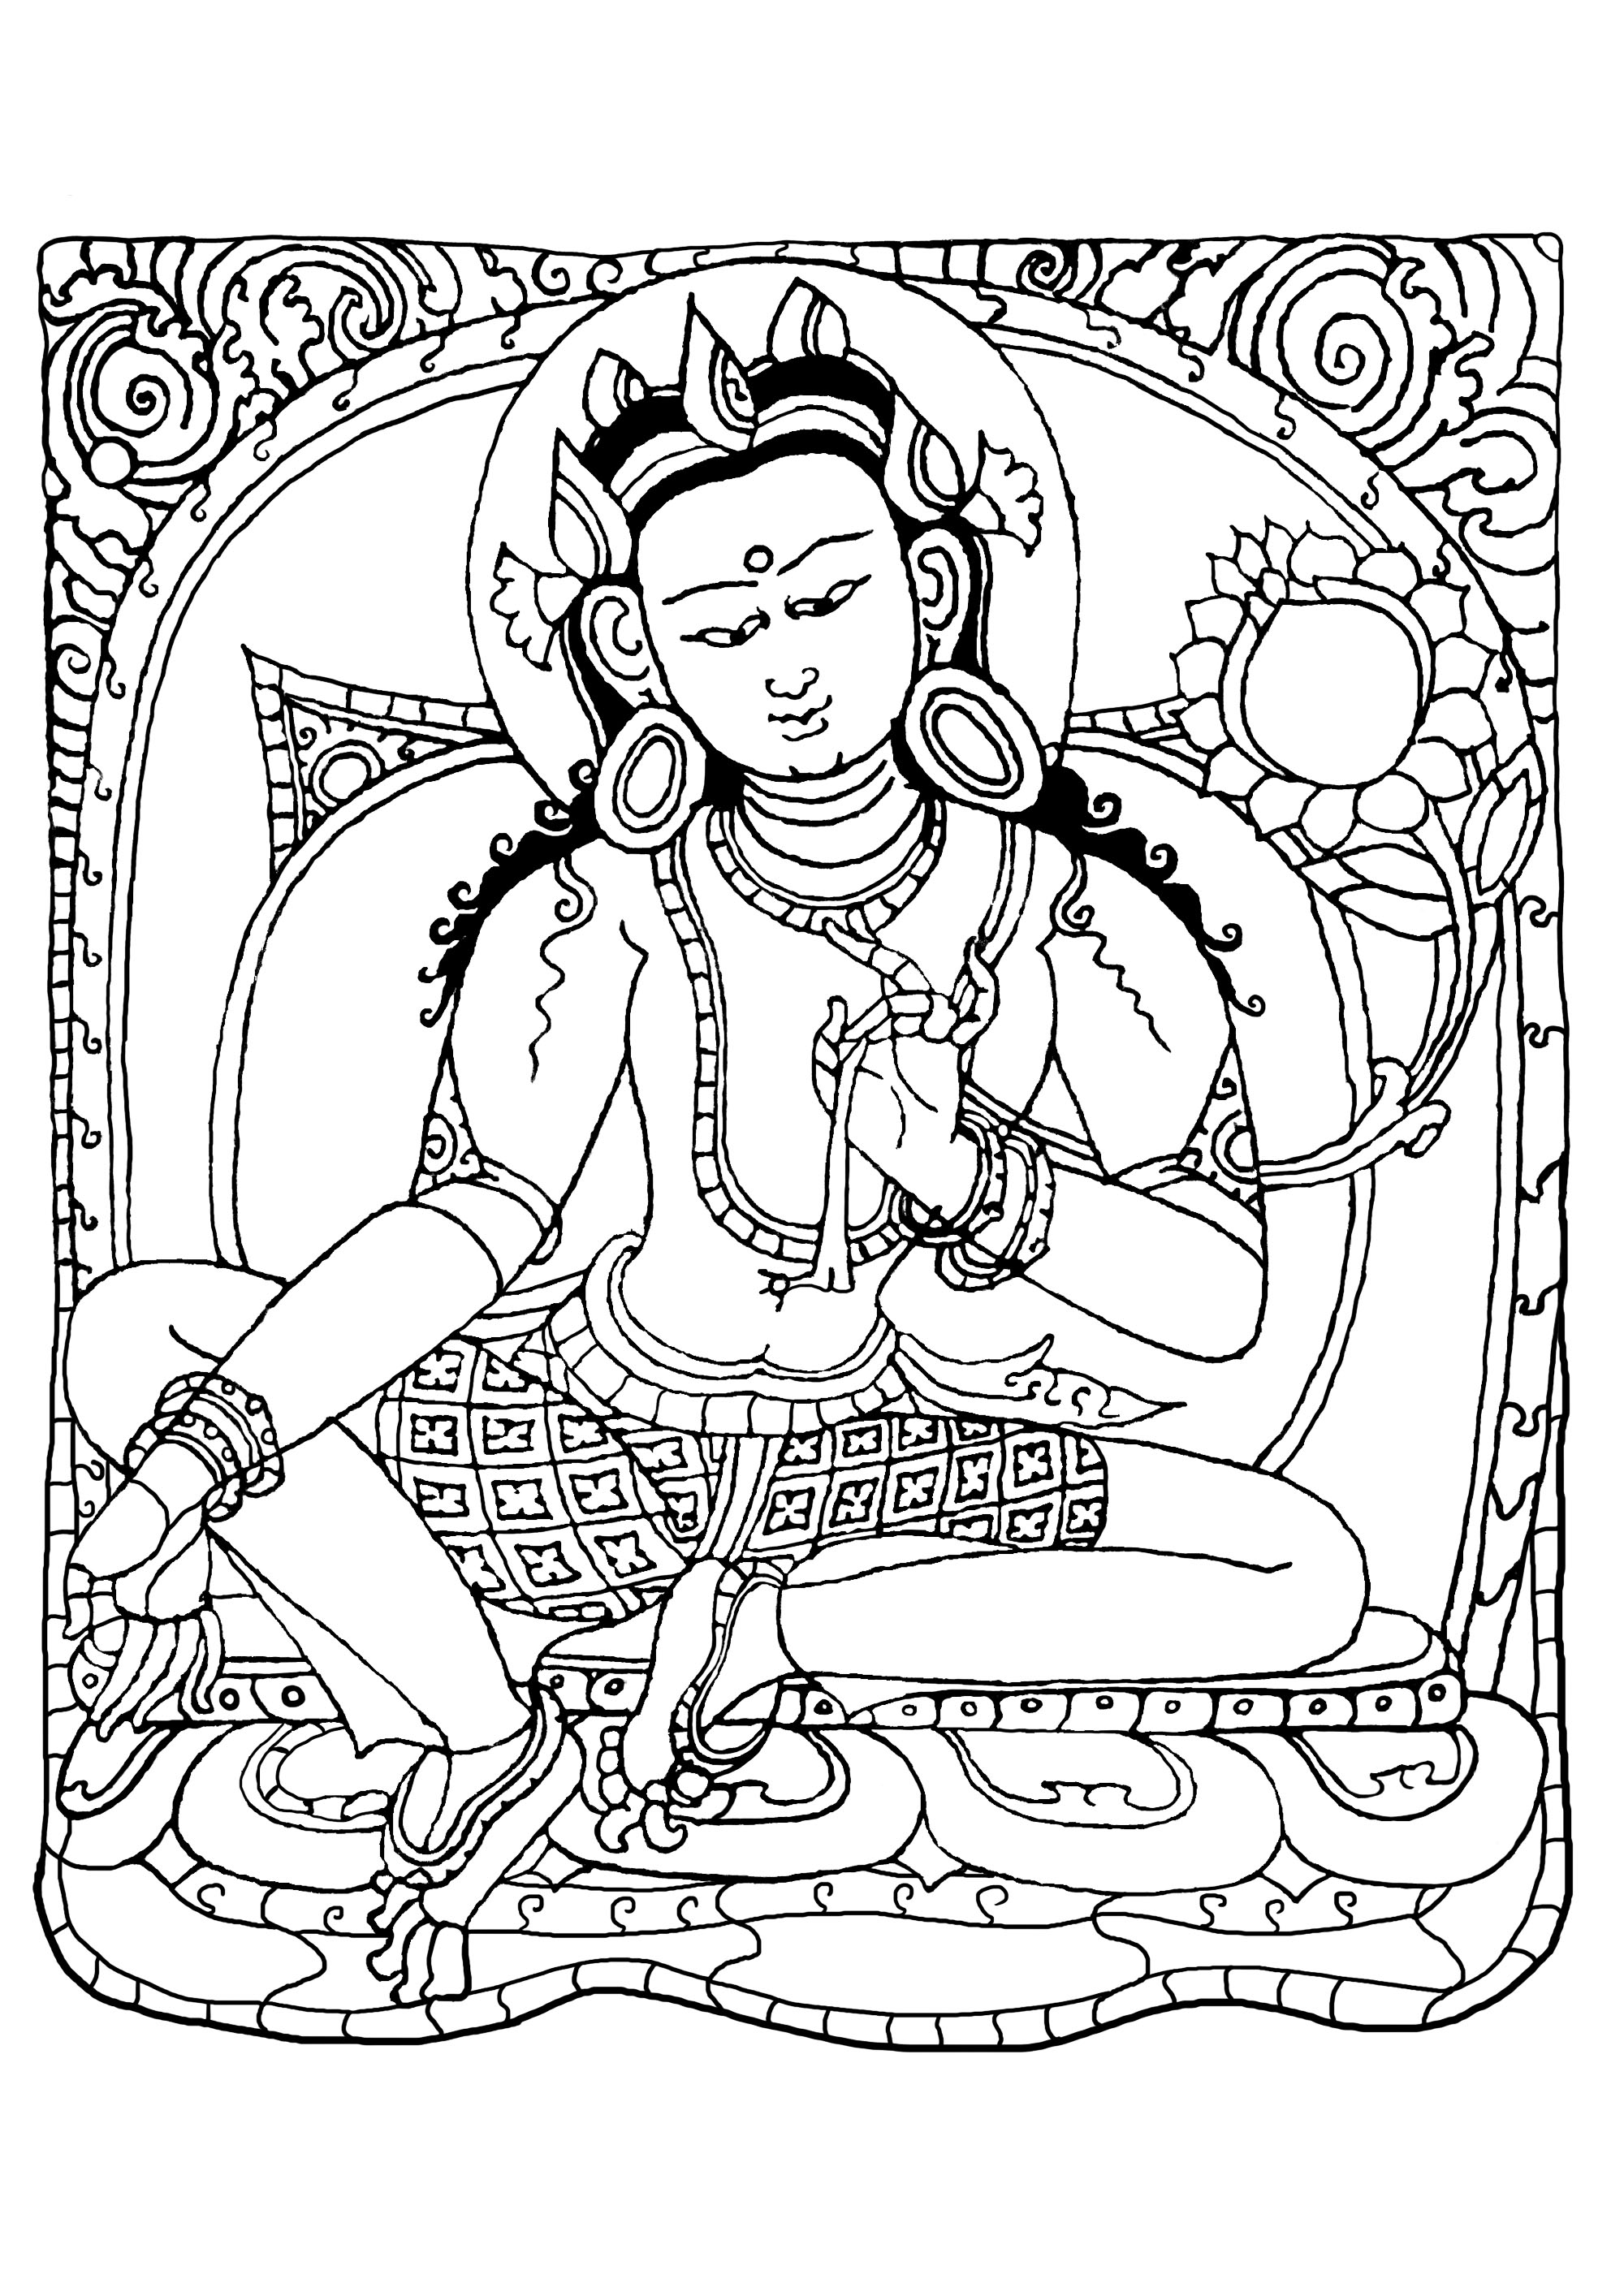 Página para colorear inspirada en un dibujo (cobre con dorado y pintura) que representa a Buda Shakyamuni. Fue fabricado por artesanos nepaleses entre 1500 y 1600. Posiblemente se fabricó y encargó en el Tíbet.